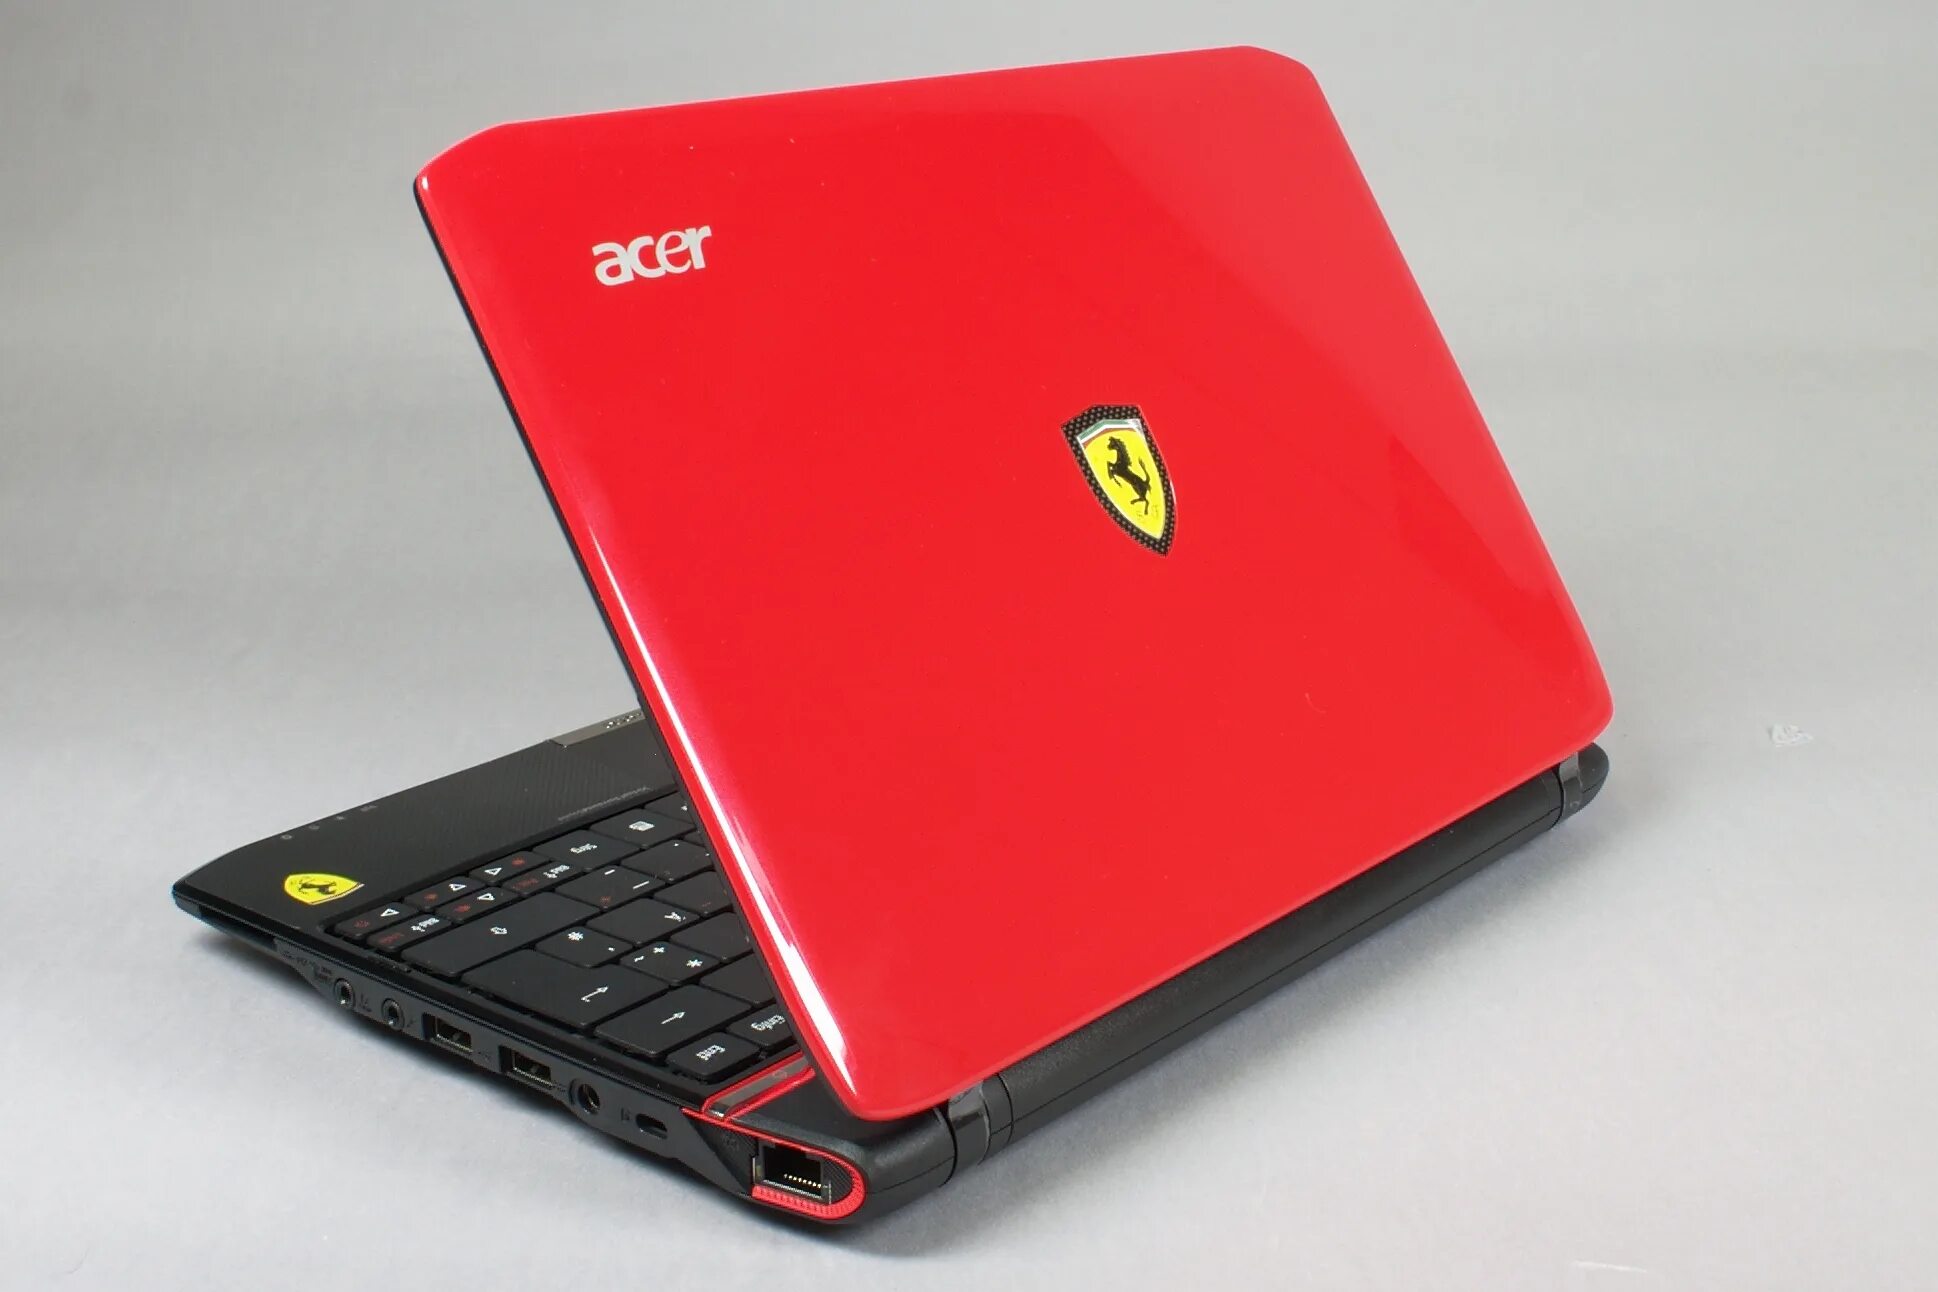 Acer ferrari. Acer Ferrari one 200. Acer Ferrari one 200-314g50n. Acer Ferrari Notebook. Acer Ferrari f1.